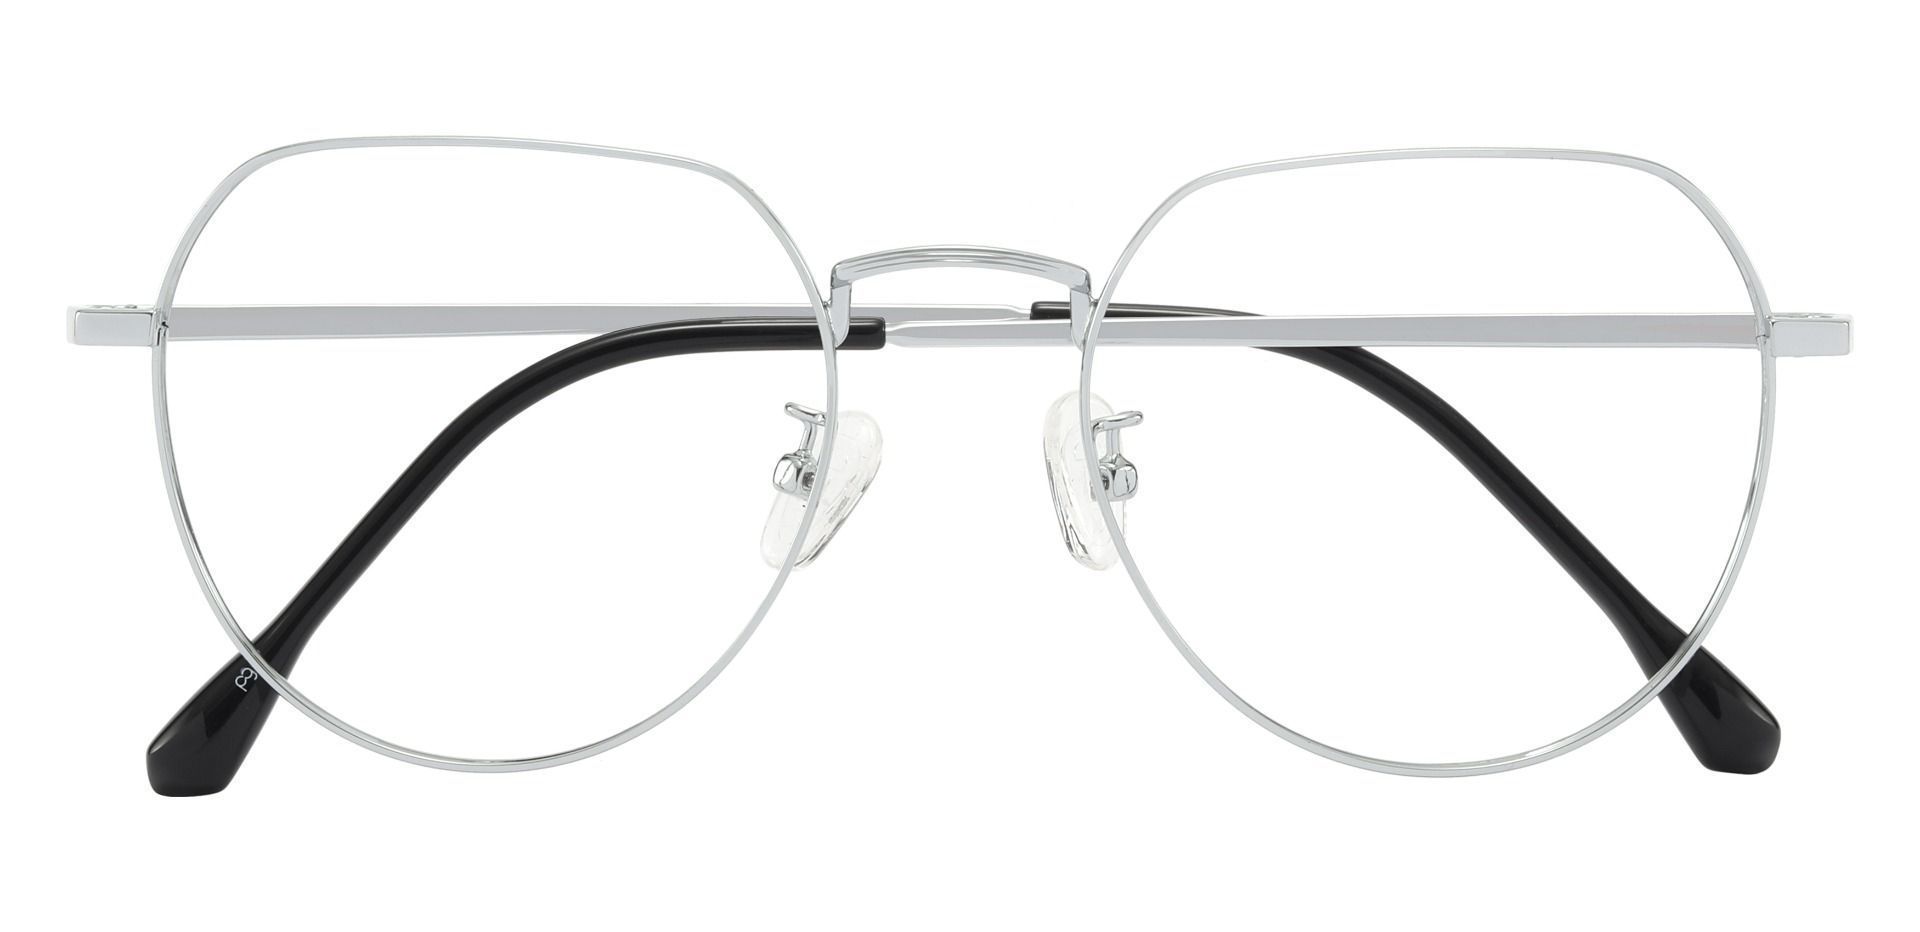 Rapid Geometric Prescription Glasses - Silver